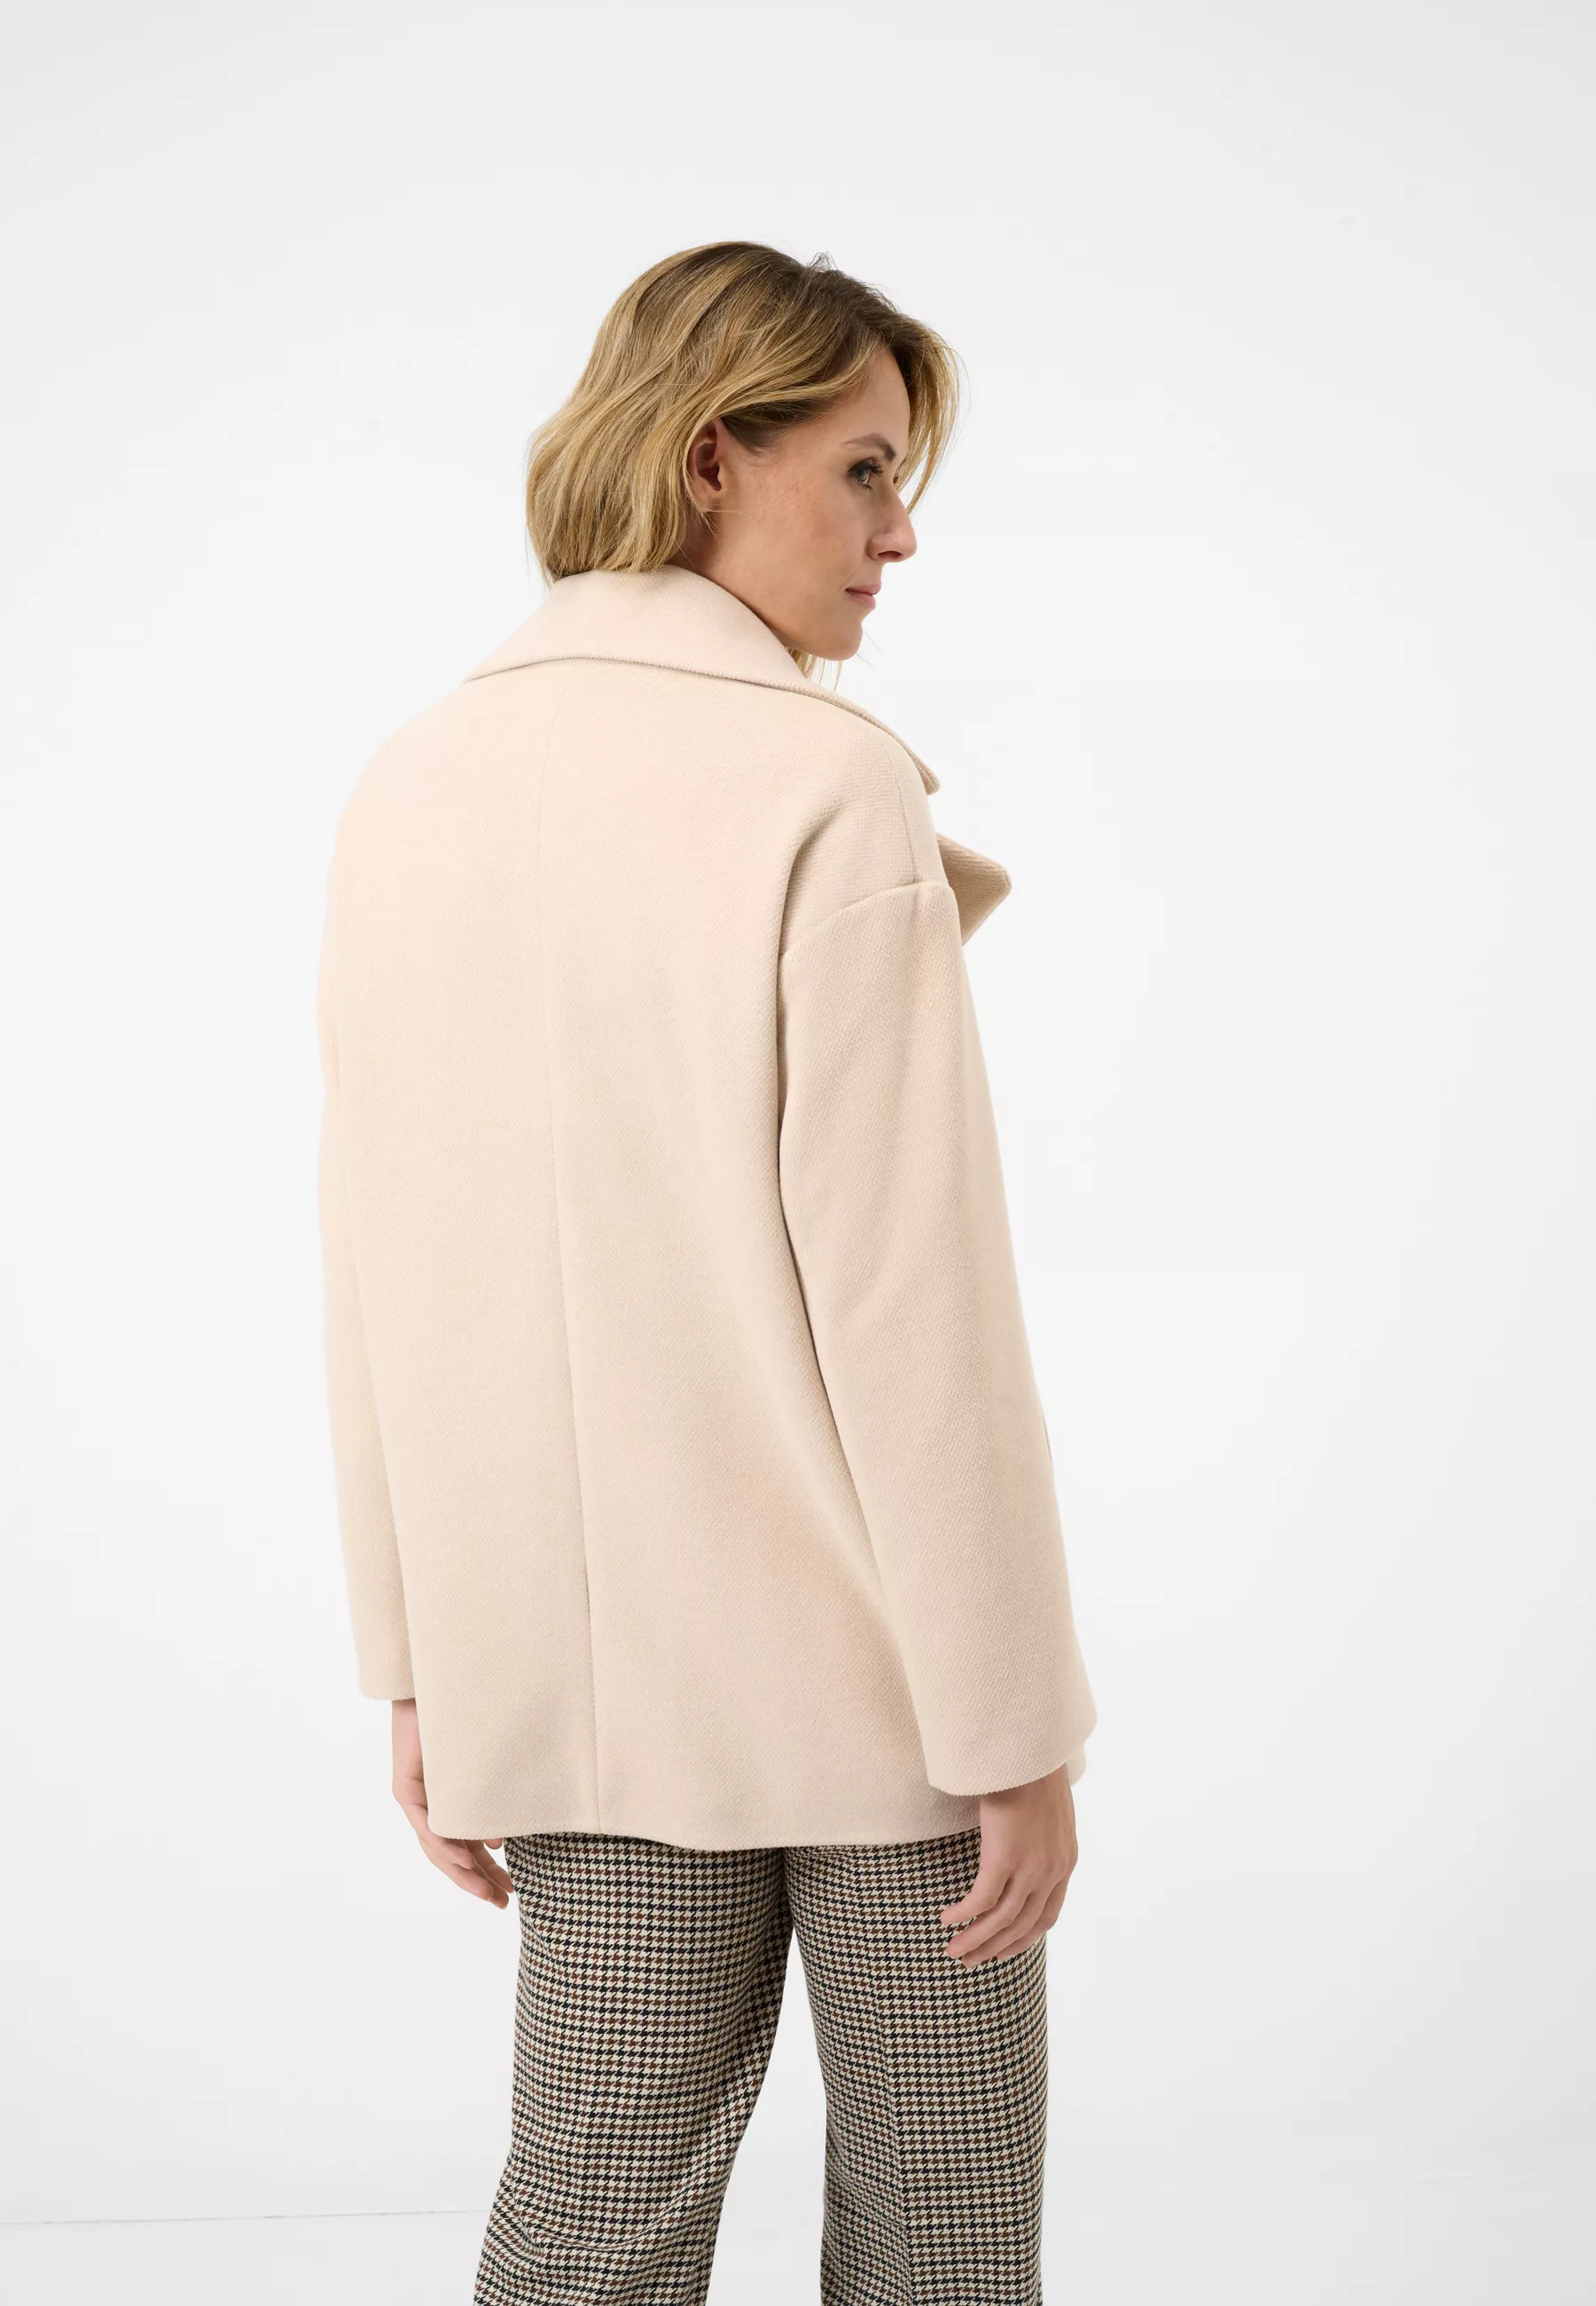 Damen Textil Mantel Nina in Beige von Ricano, Rückansicht am Model